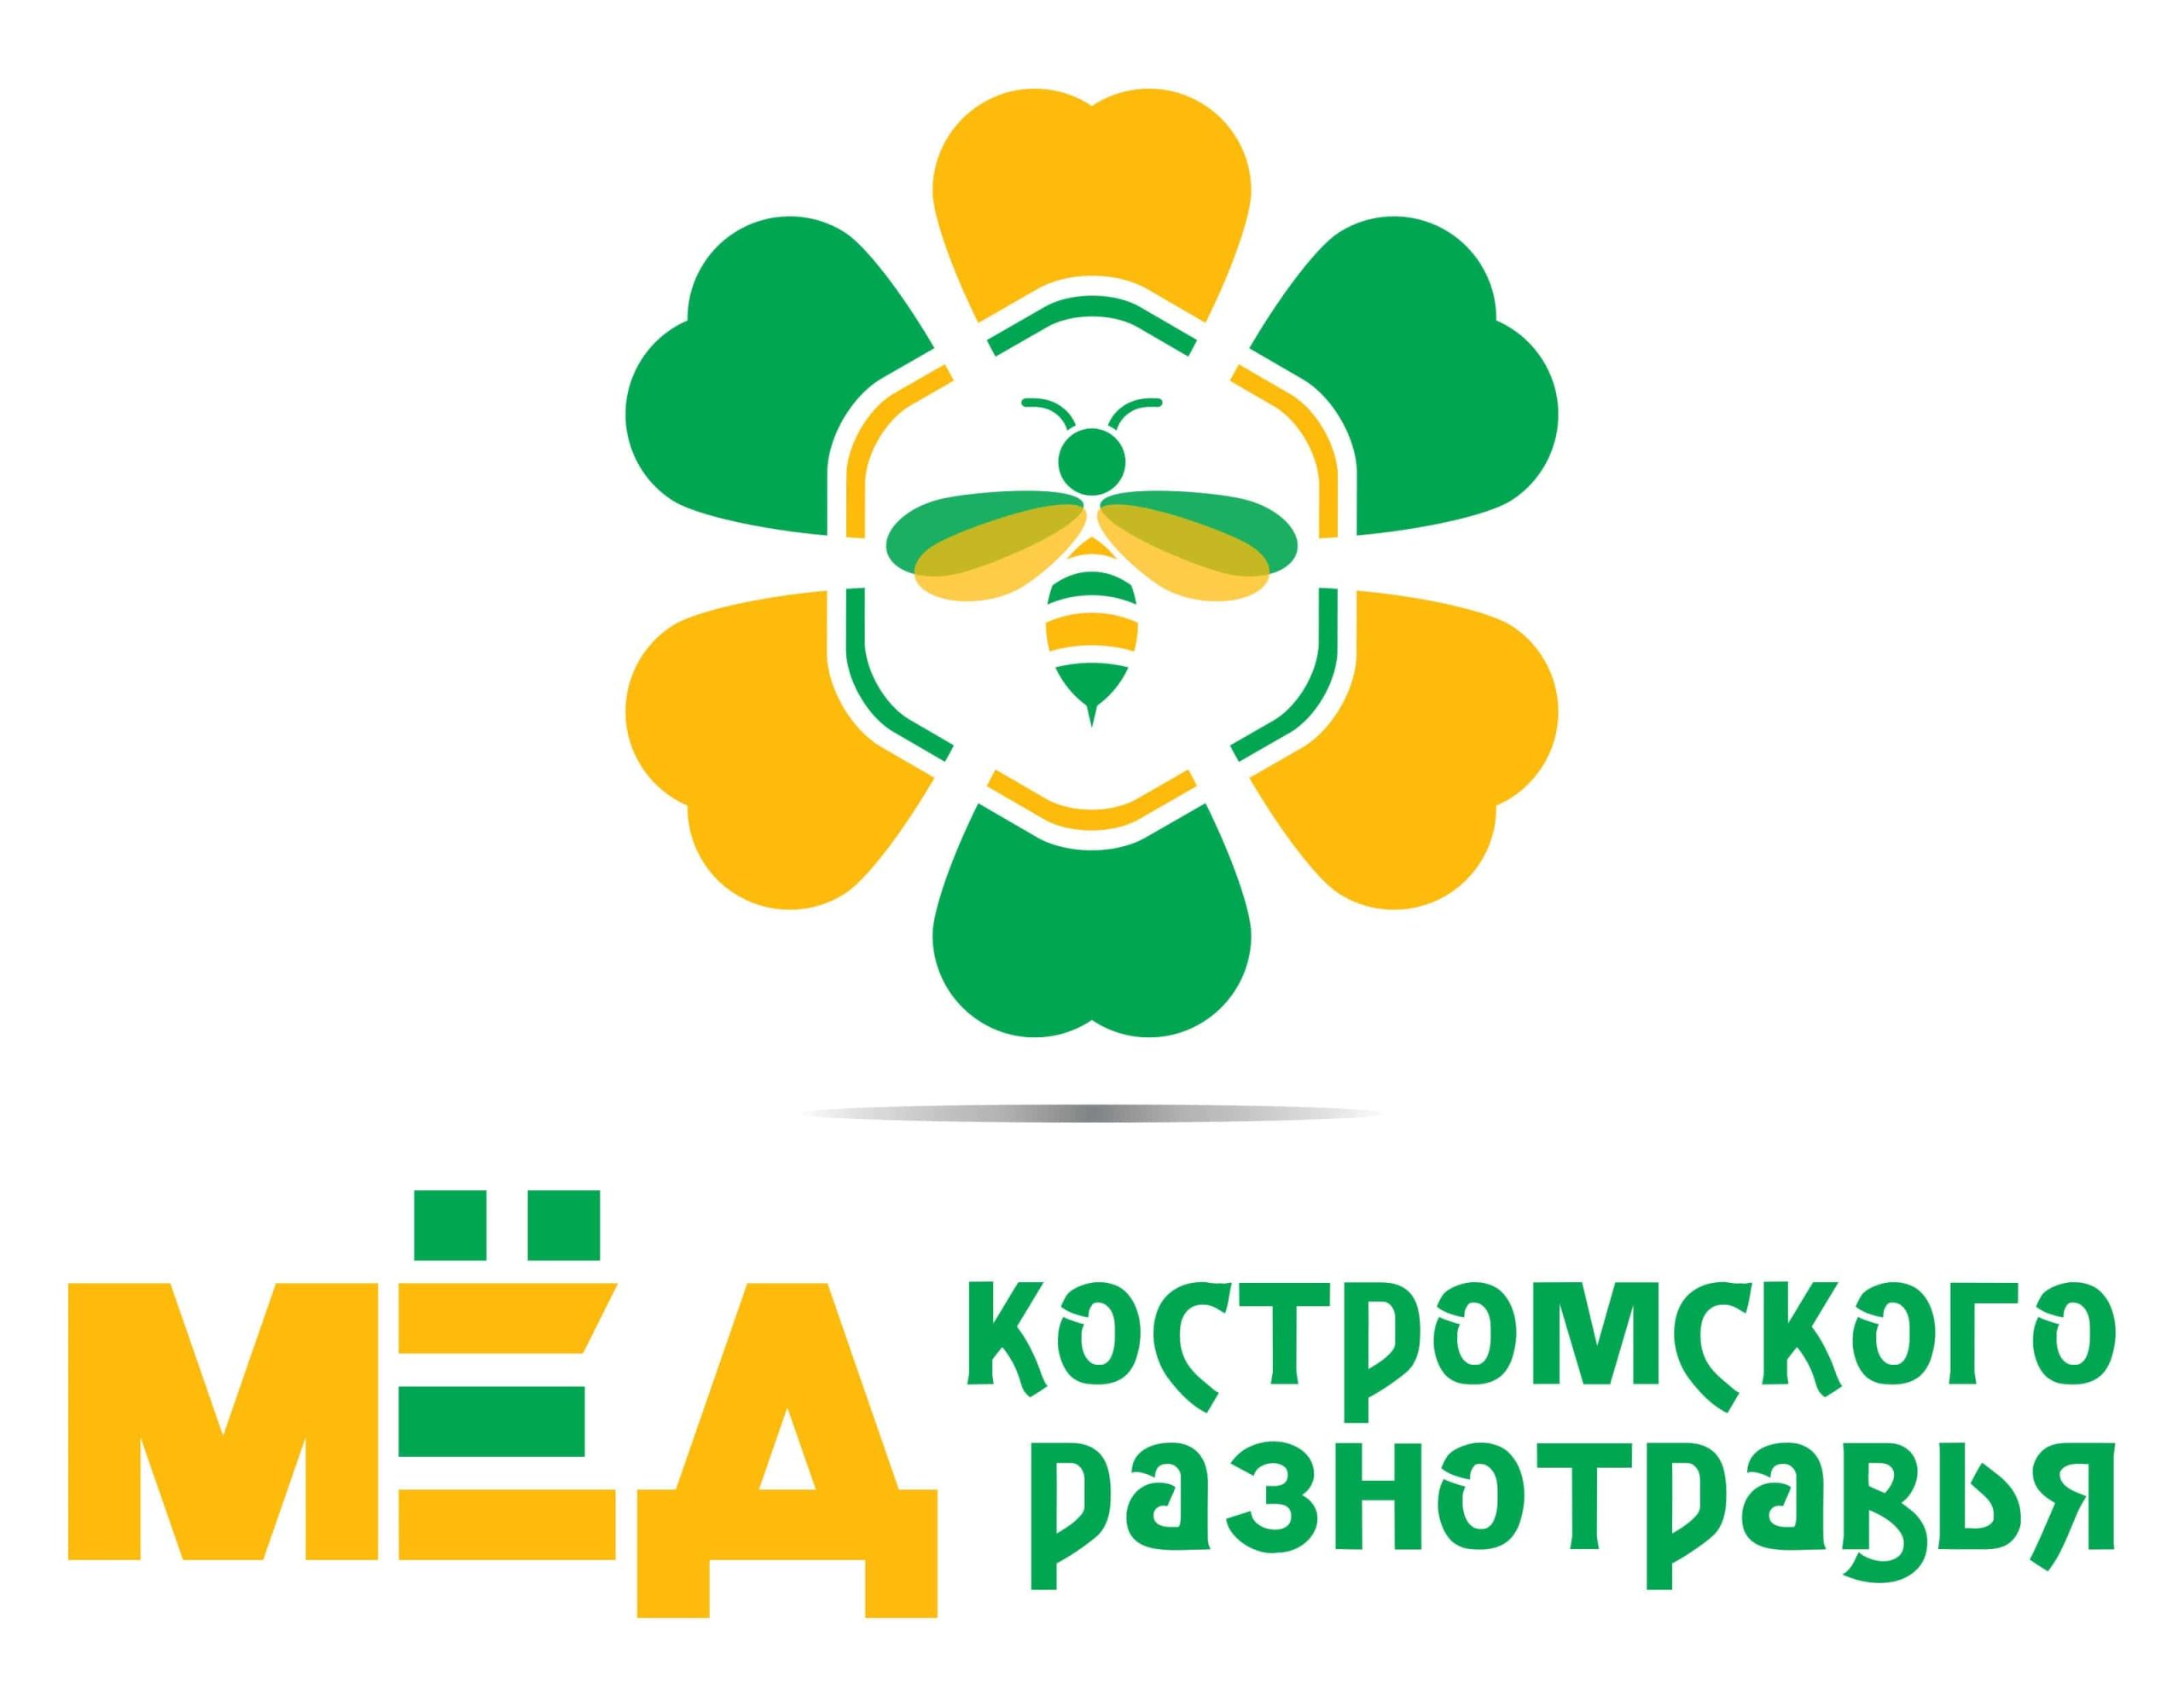 IV Межрегиональный форум пчеловодов прошел в Костроме